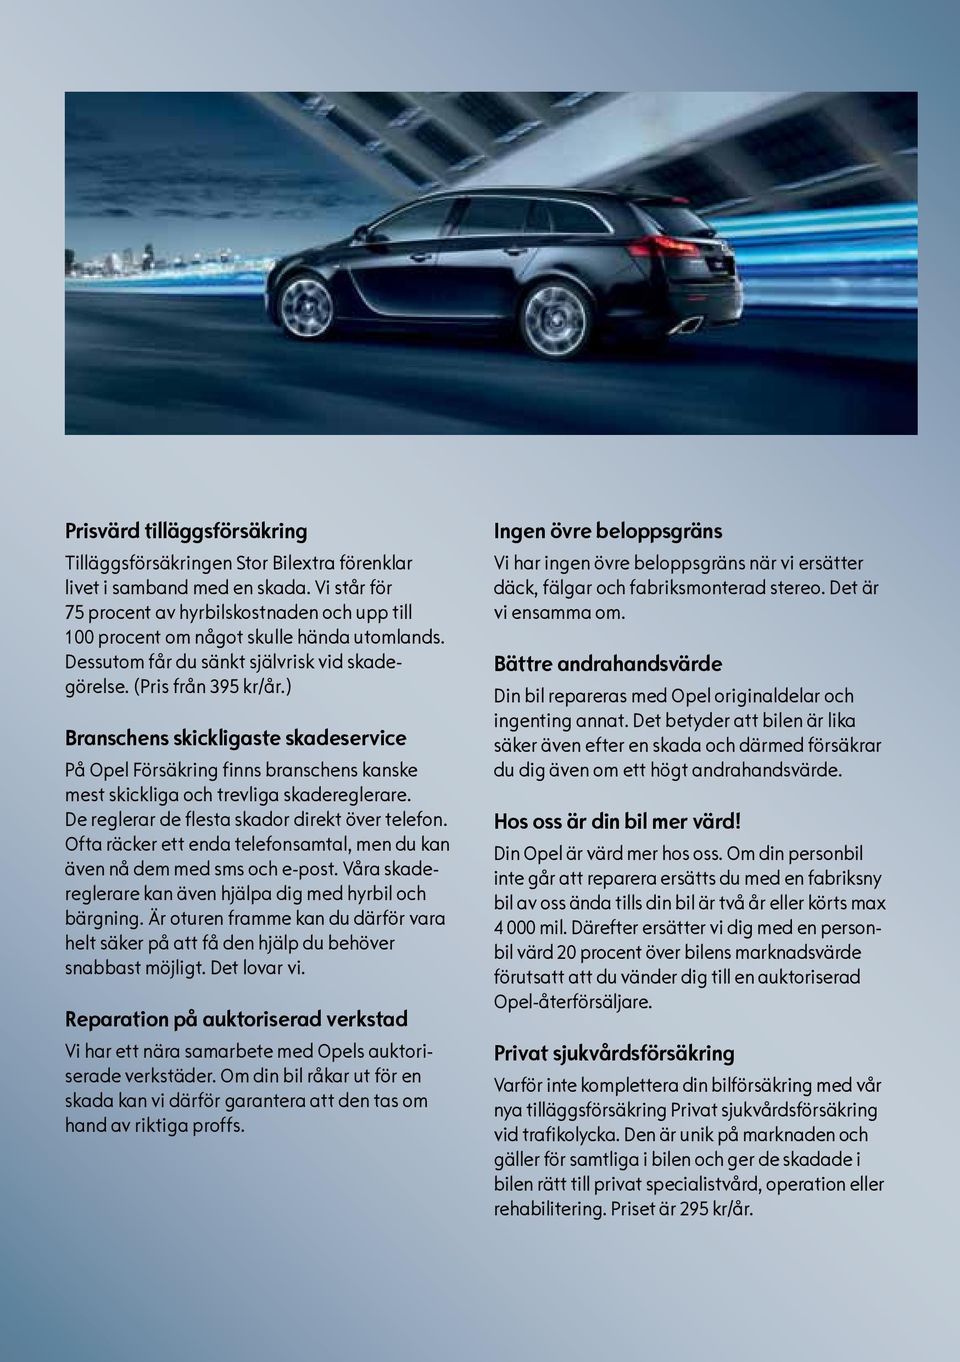 ) Branschens skickligaste skadeservice På Opel Försäkring finns branschens kanske mest skickliga och trevliga skadereglerare. De reglerar de flesta skador direkt över telefon.